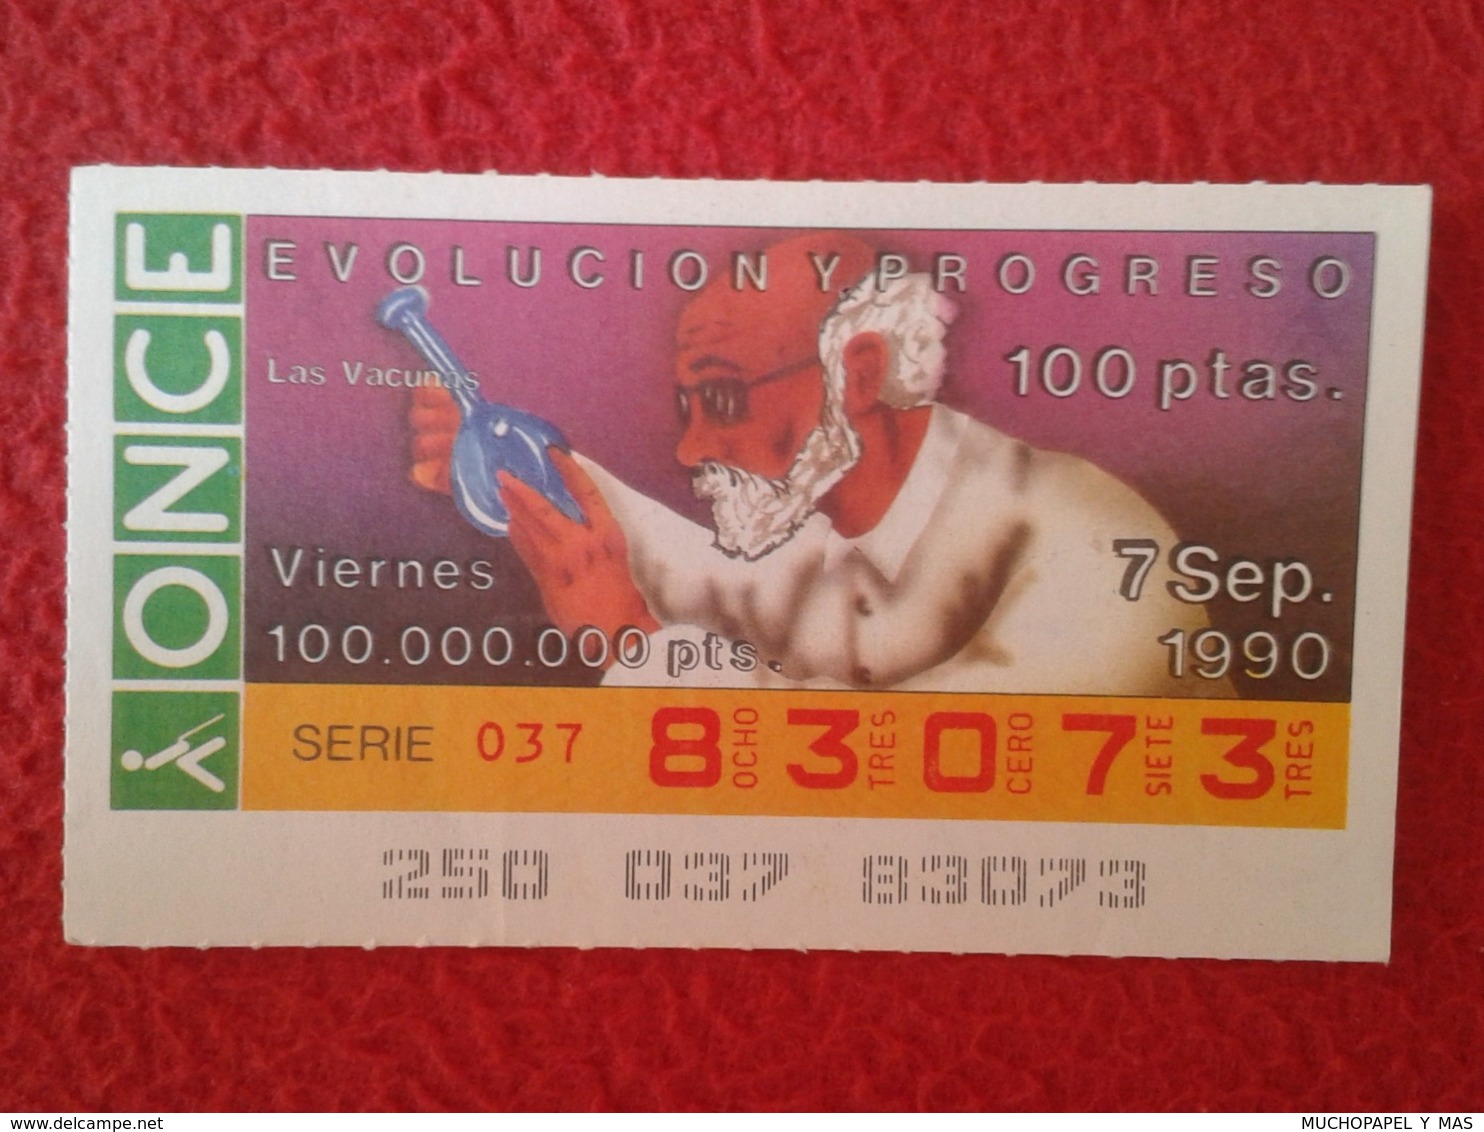 SPAIN CUPÓN DE ONCE LOTTERY LOTERÍA ESPAÑA 1990 EVOLUCIÓN Y PROGRESO EVOLUTION AND PROGRESS LAS VACUNAS VACCINES VACCINE - Billetes De Lotería